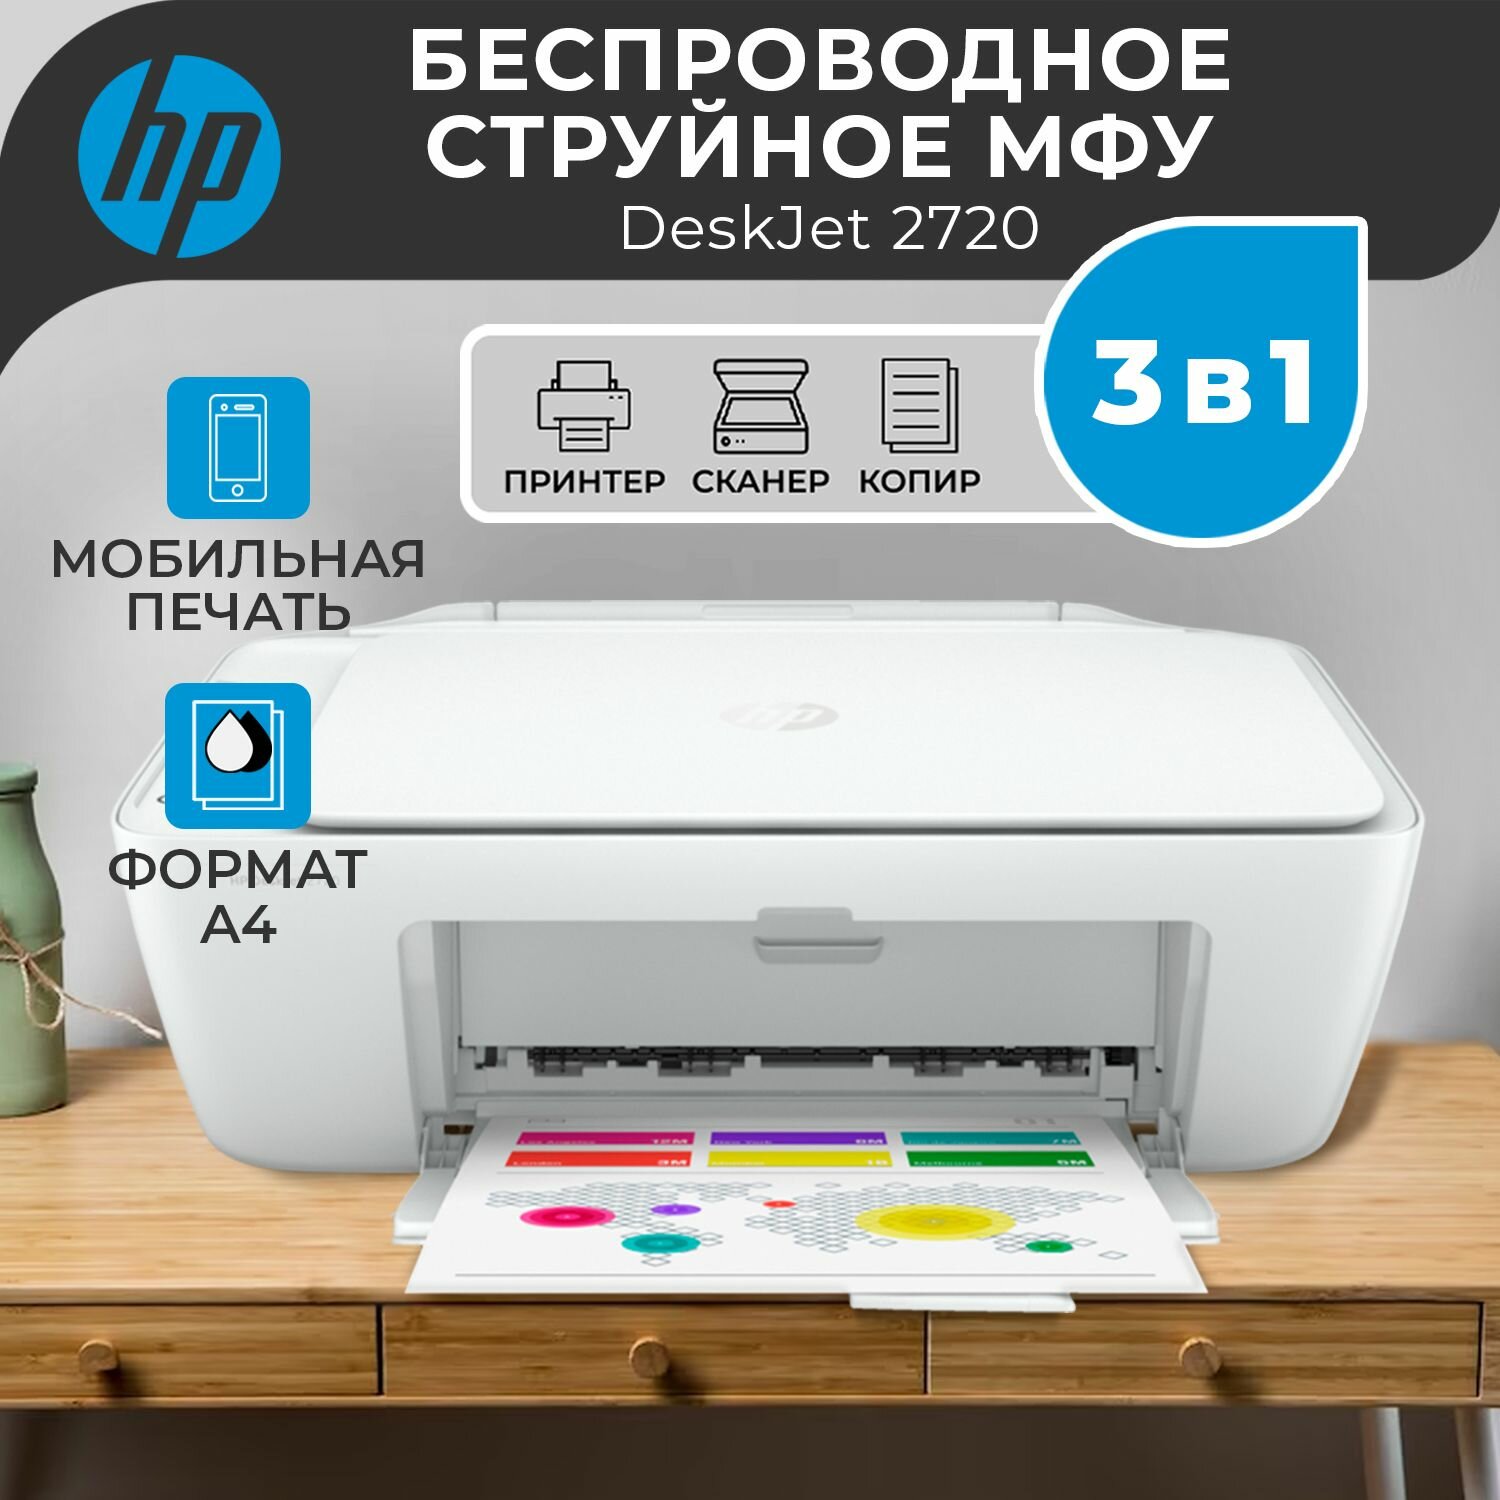 Принтер МФУ струйный цветной HP DeskJet 2720, 3 в 1, Wi-Fi сканер и копир распечатка на бумаге А4, цветная печать 5 стр/мин, черно-белая 7, разрешение для печати 4800x1200 dpi, белый